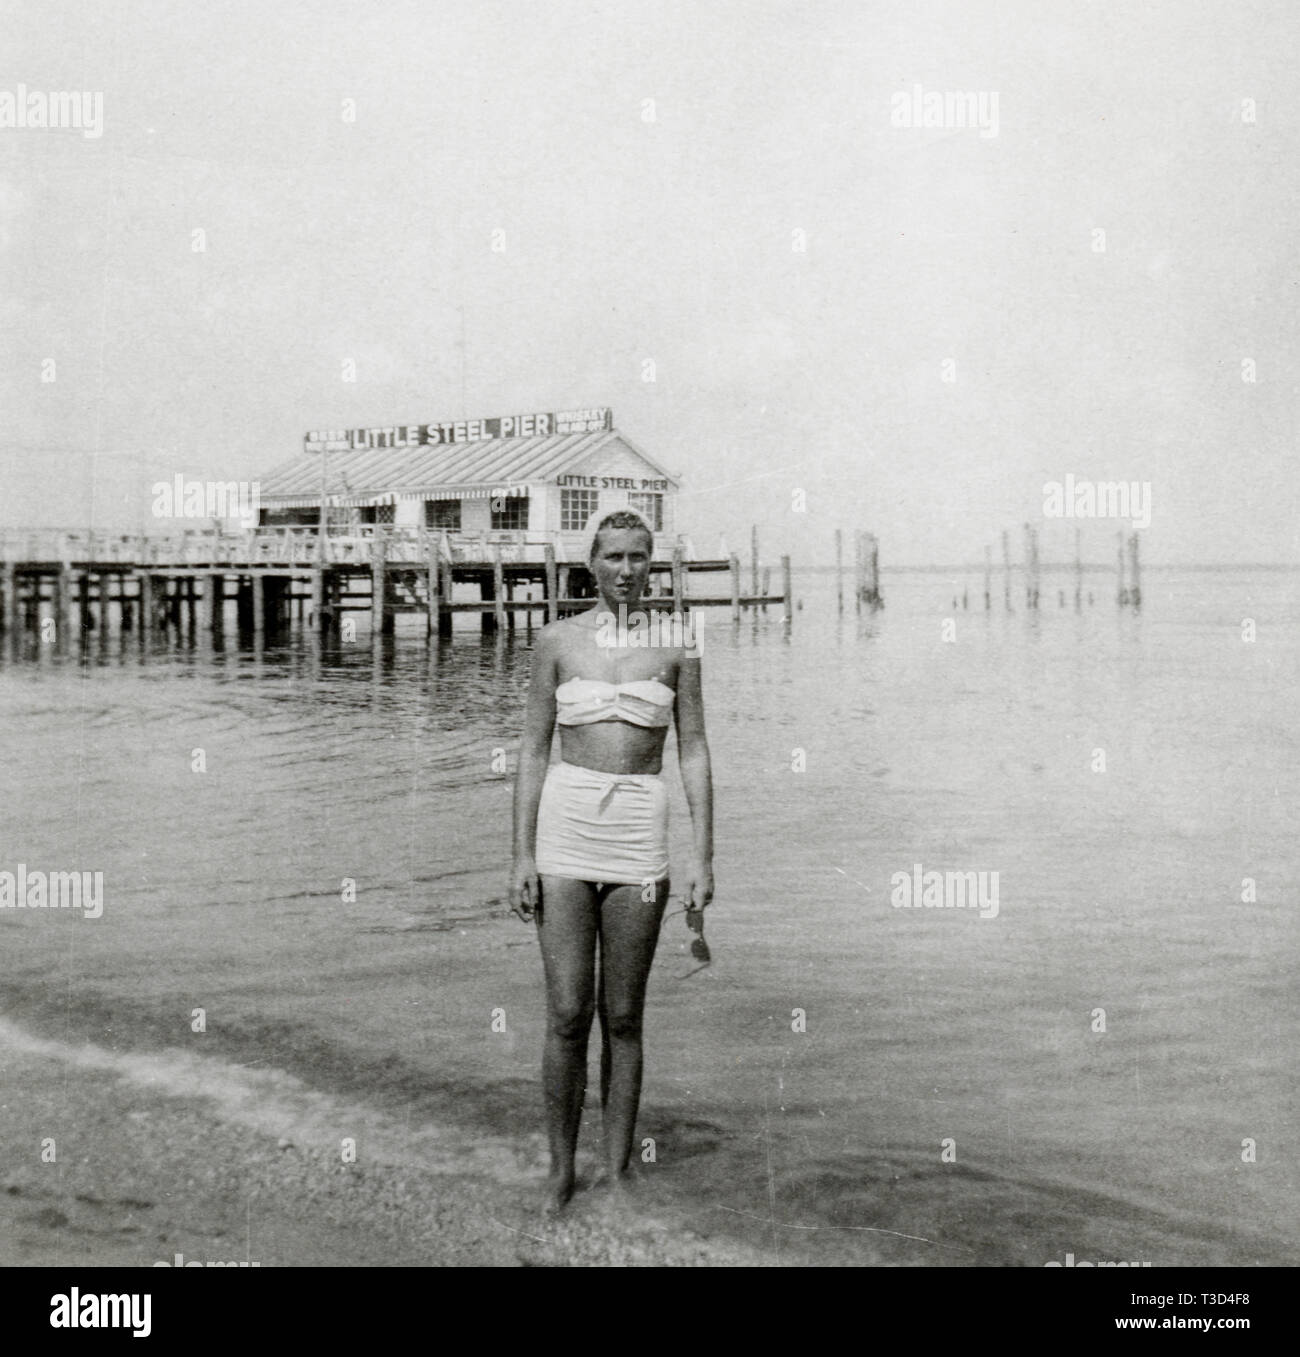 Colonial Beach, Virginia connu sous le nom de "Las Vegas du pauvre' et 'Las Vegas sur le Potomac" lorsqu'il a pris de l'importance au début des années 50. Le jeu a été admis et les casinos, comme le peu de Steel Pier, s'envola pour mettre en dollars pour la communauté. Le peu de Steel Pier fut bientôt renversé par un ouragan et le succès instantané d'une ville est entrée en déclin après avoir joué a été de nouveau interdit en 1958. Ces images montrent Colonial Beach au début de son retour en 1950. Banque D'Images